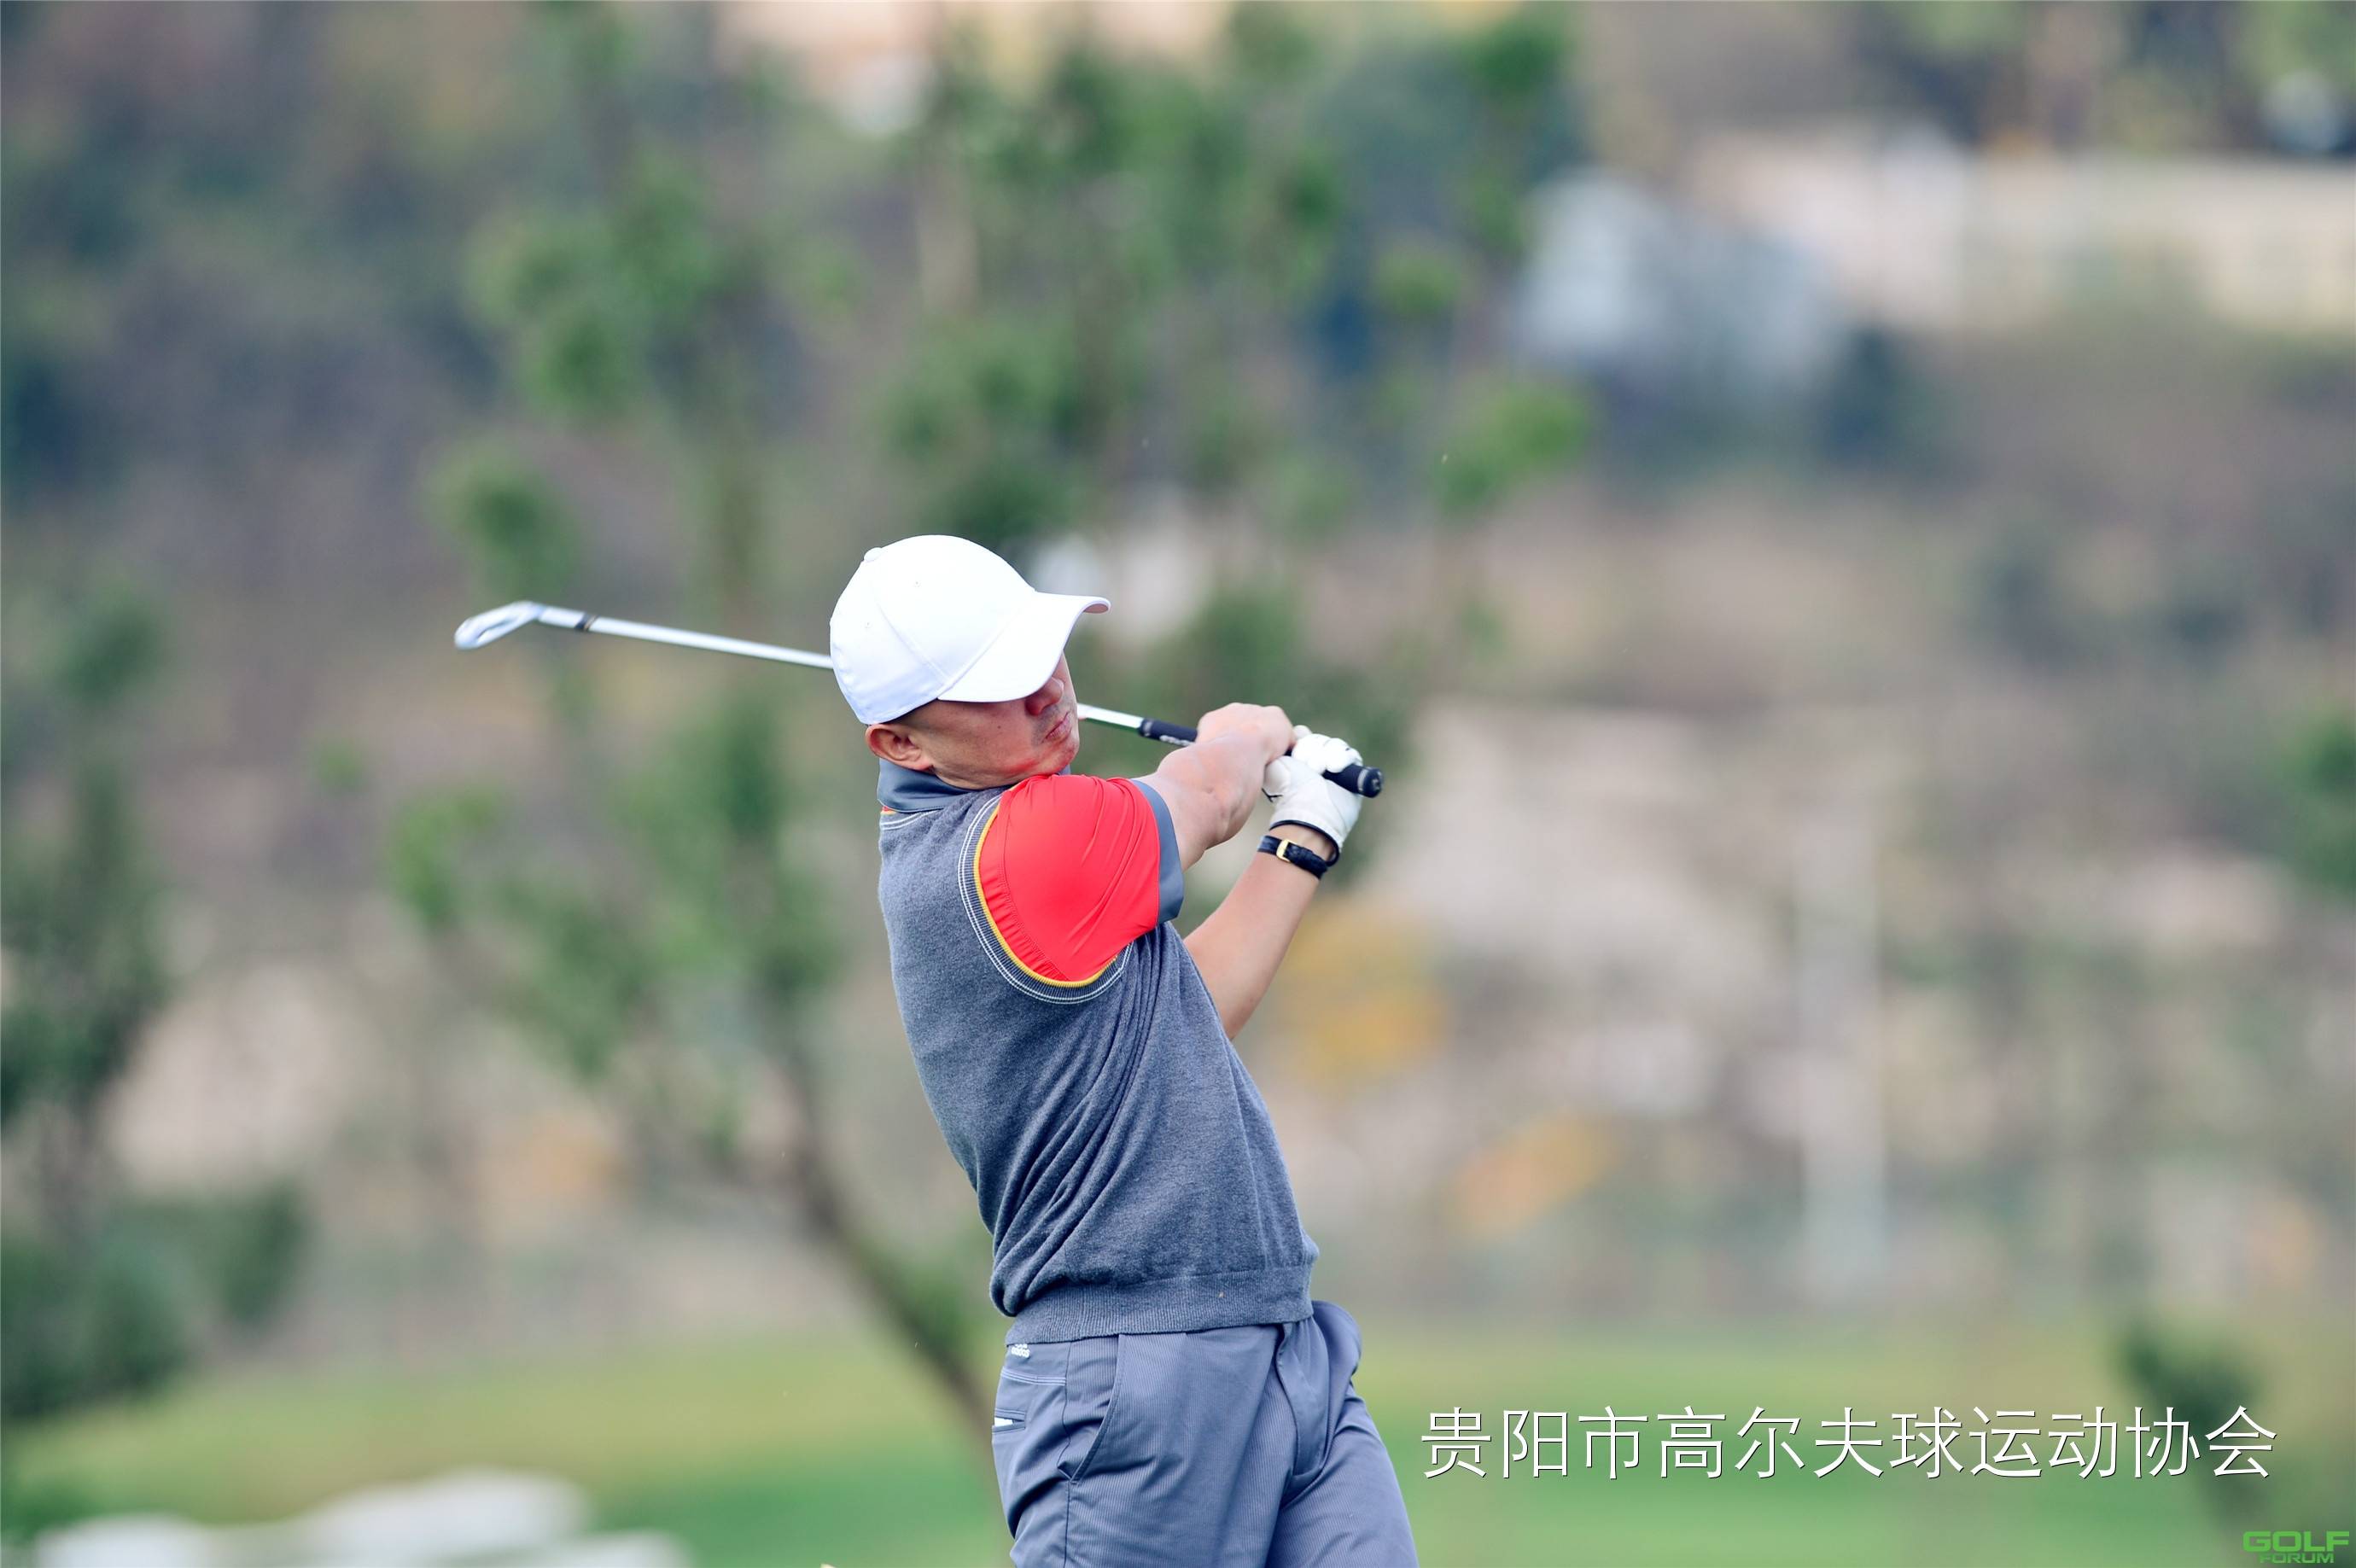 2014红华杯·贵州业余高尔夫锦标赛球员风采第五组石邦华谭亚 ...